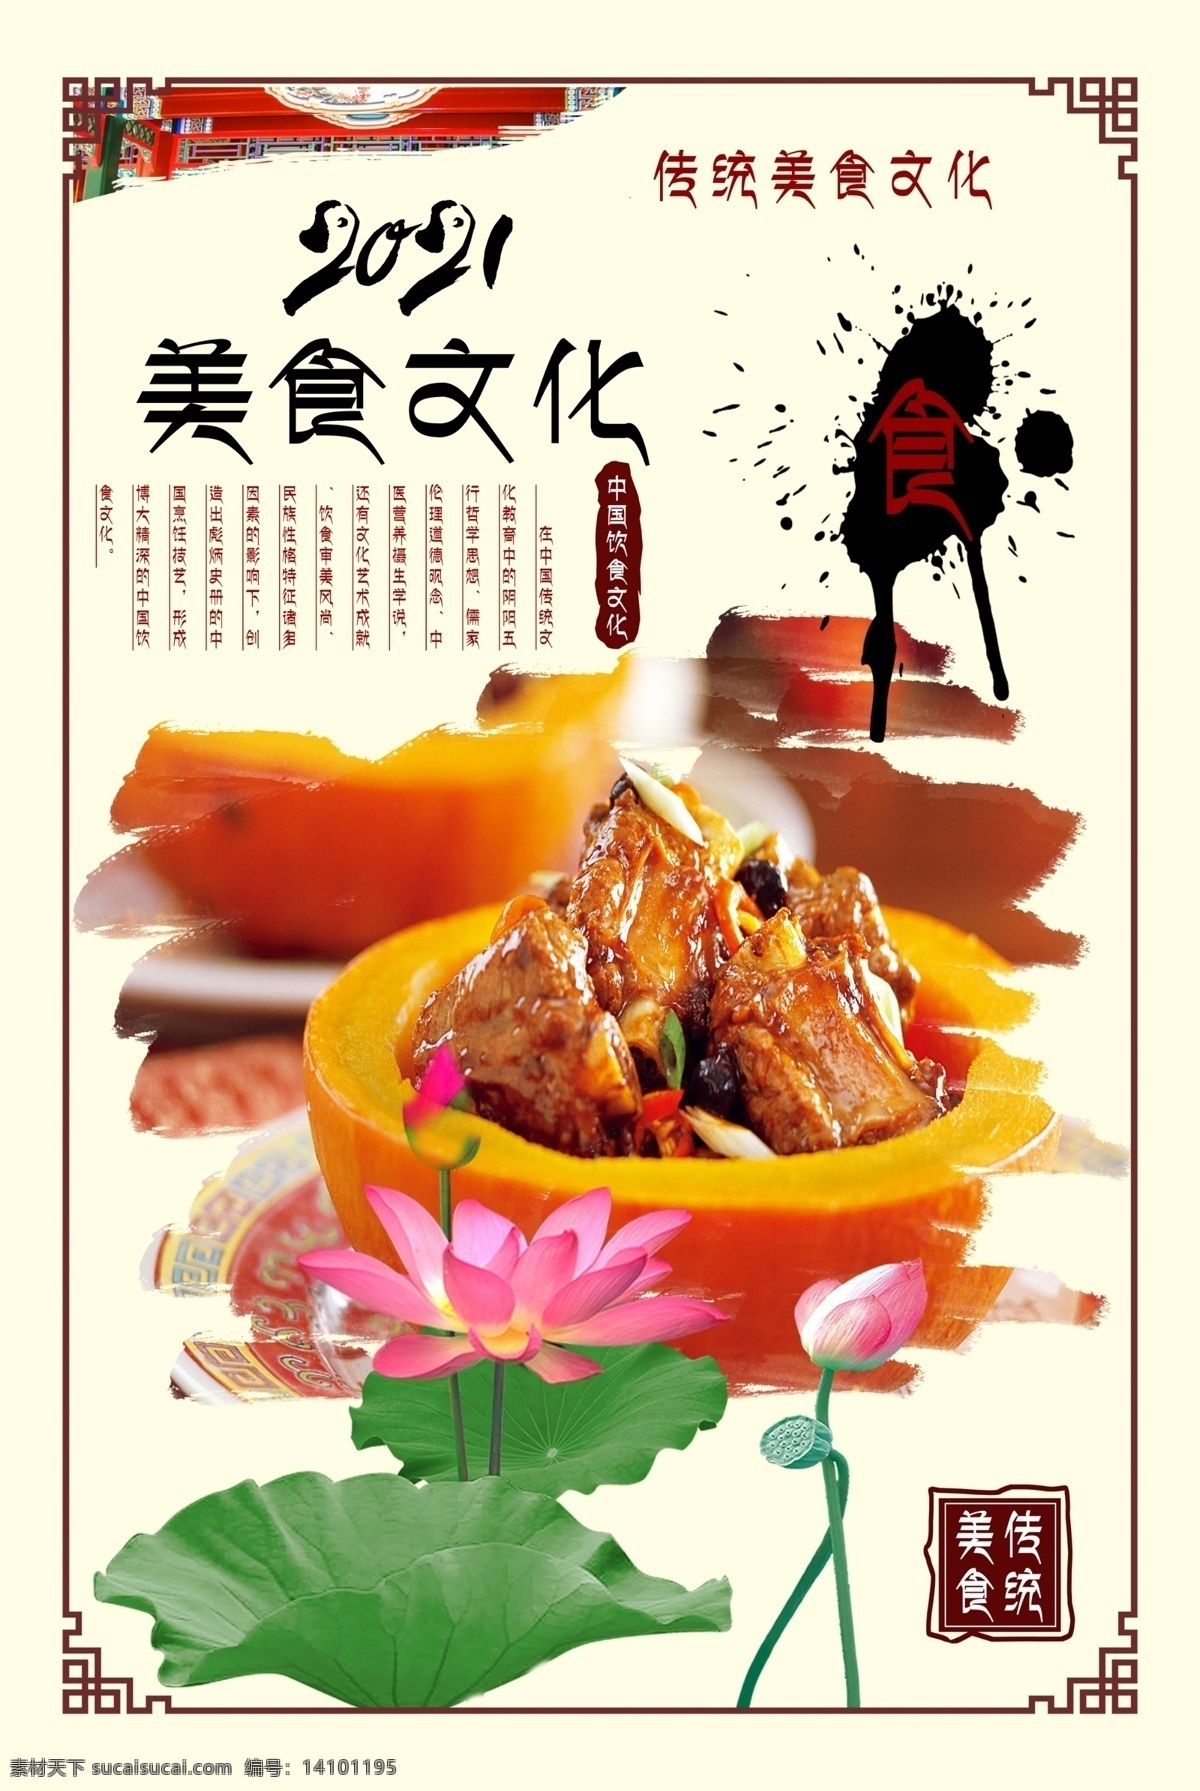 红烧排骨图片 红烧排骨 海报 菜单 食谱 美食文化 展板模板